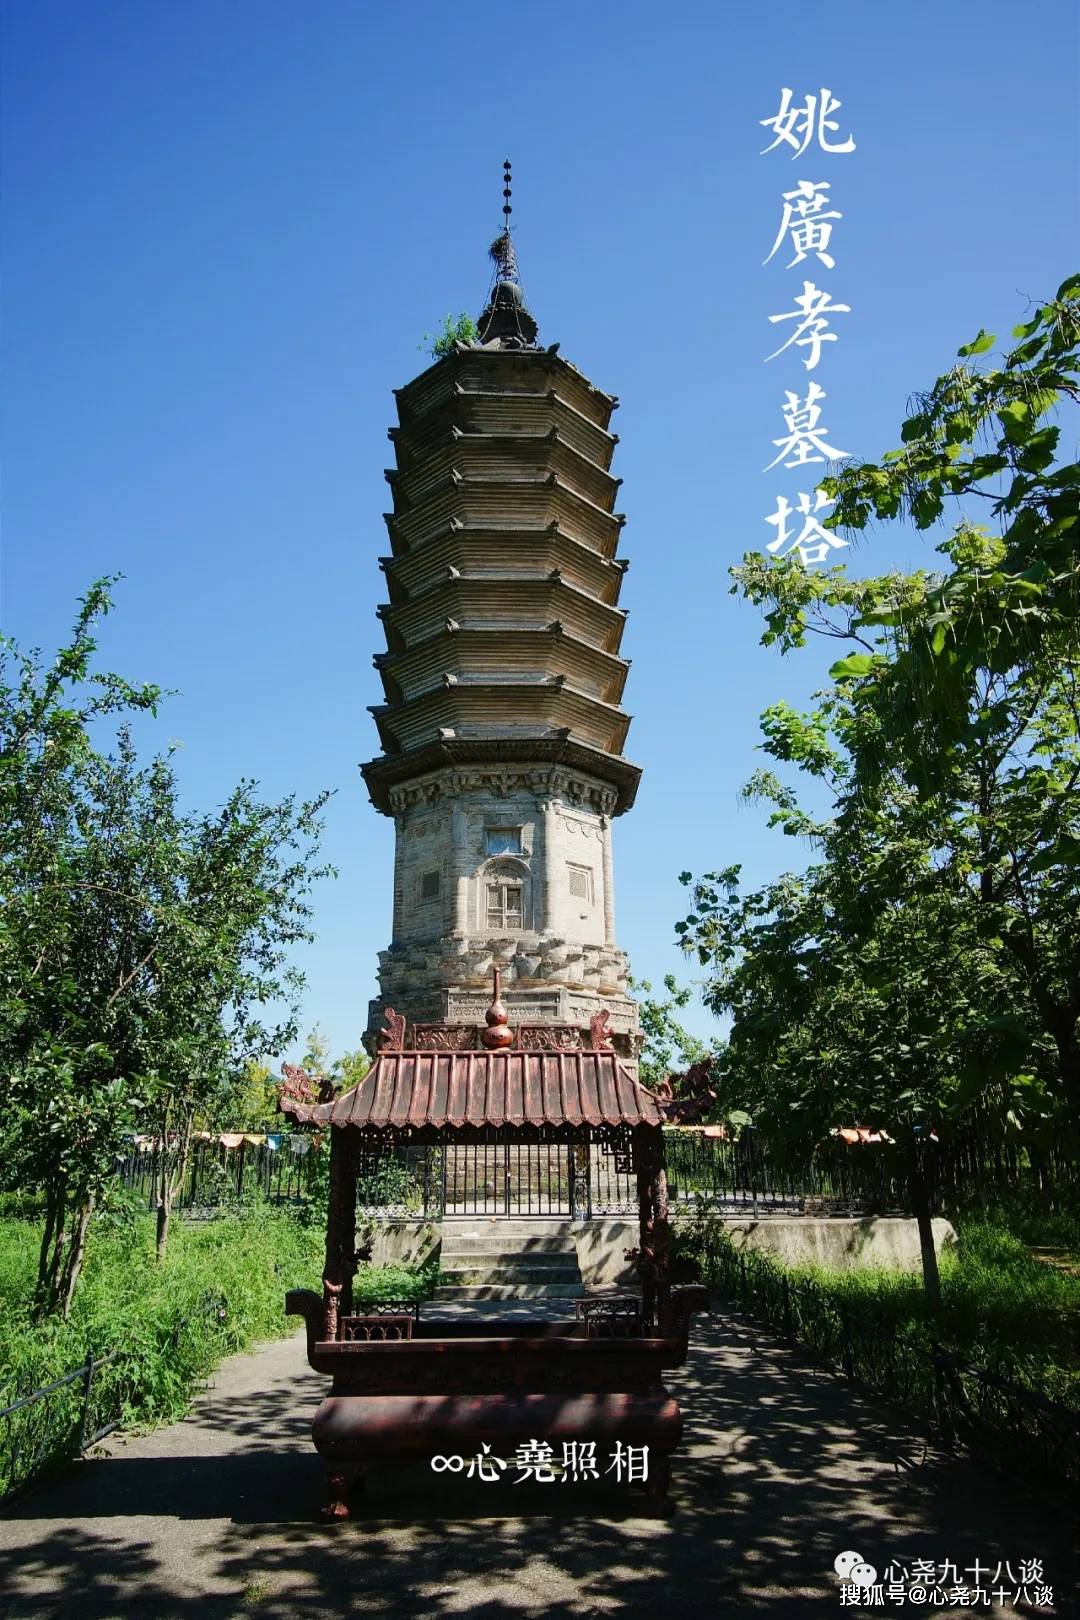 原创这里不仅有全国文保姚广孝墓塔,还隐藏着一座北京很少见的清代